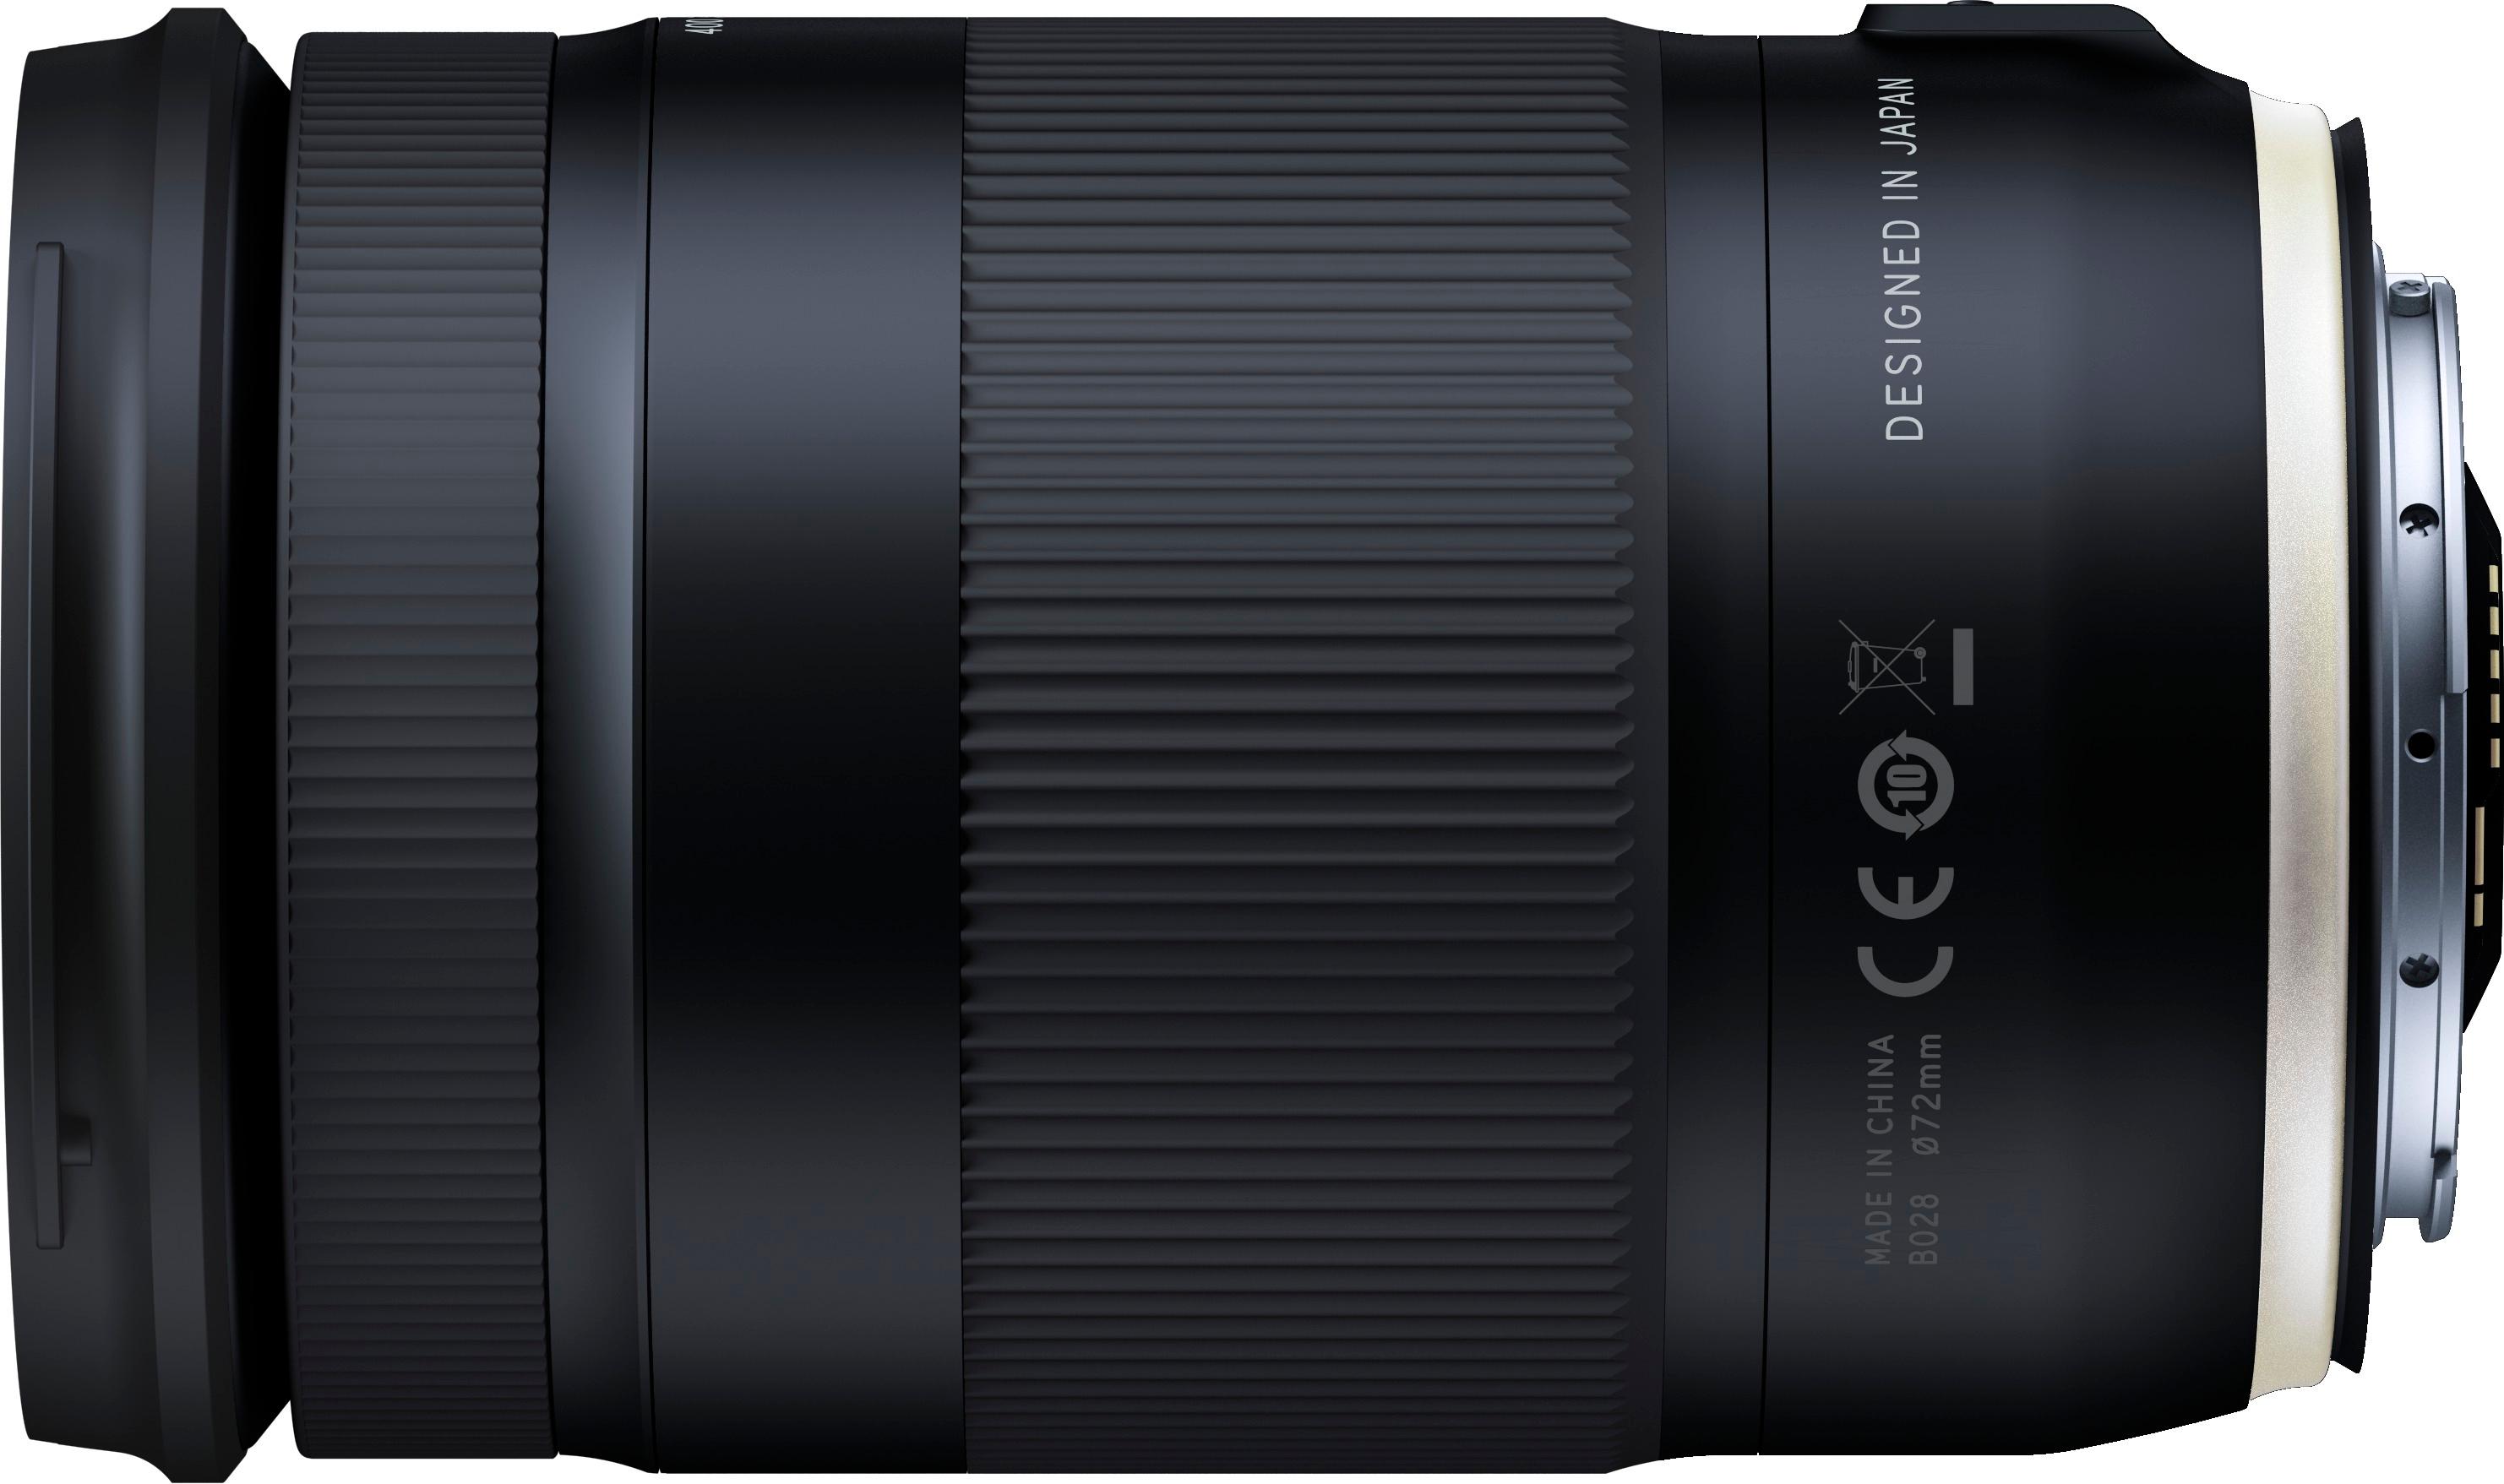 Back View: NIKKOR Z 70-200mm f/2.8 VR S Optical Telephoto Zoom Lens for Nikon Z Cameras - Black